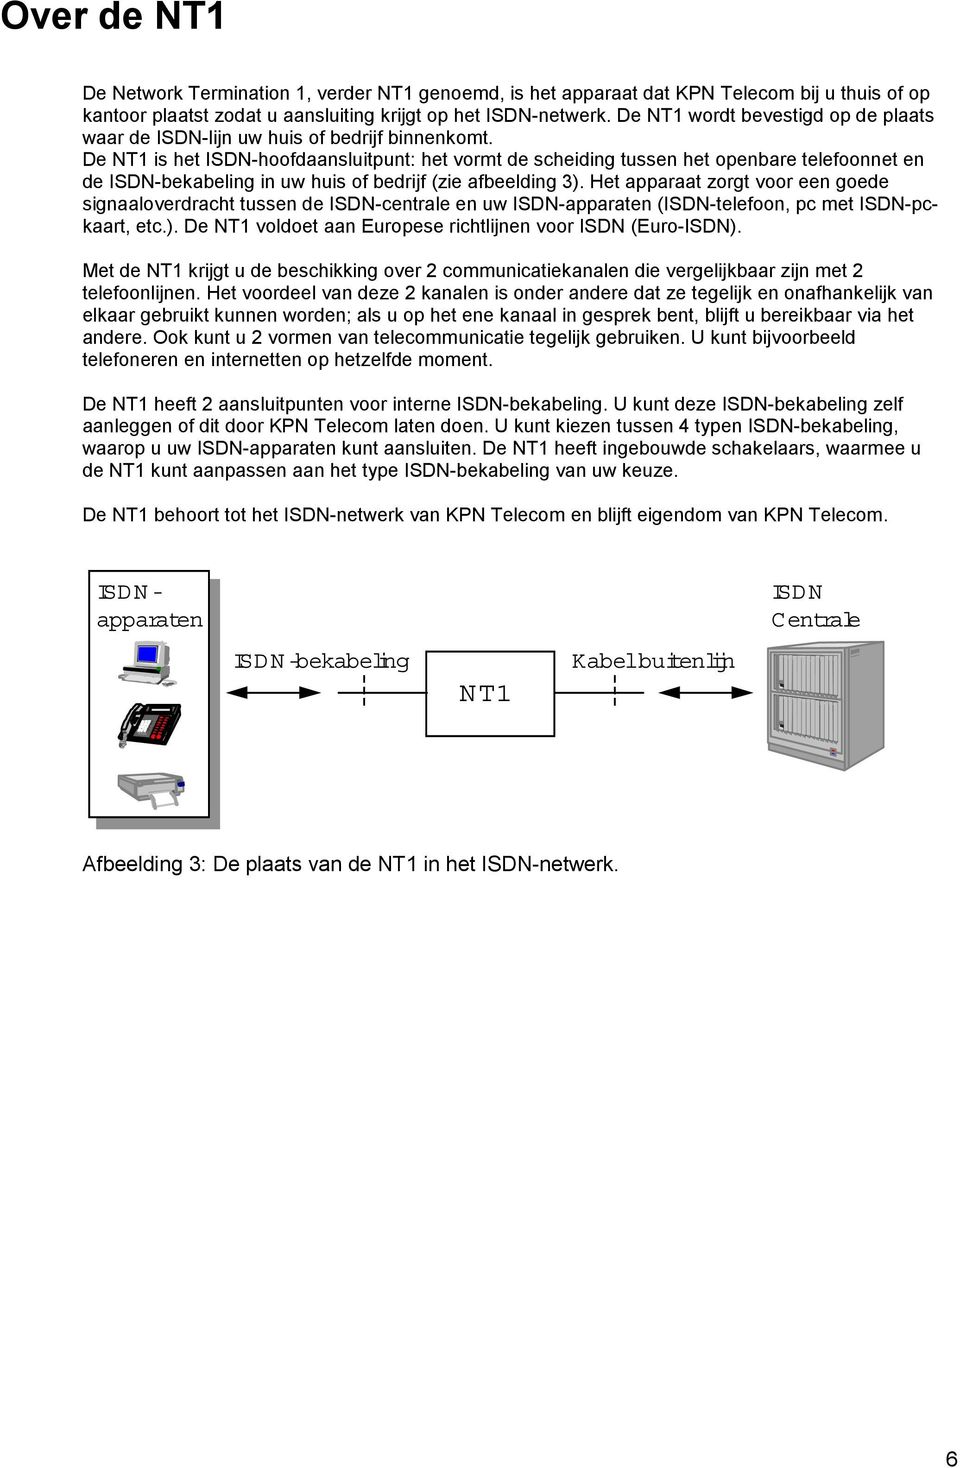 De NT1 is het ISDN-hoofdaansluitpunt: het vormt de scheiding tussen het openbare telefoonnet en de ISDN-bekabeling in uw huis of bedrijf (zie afbeelding 3).